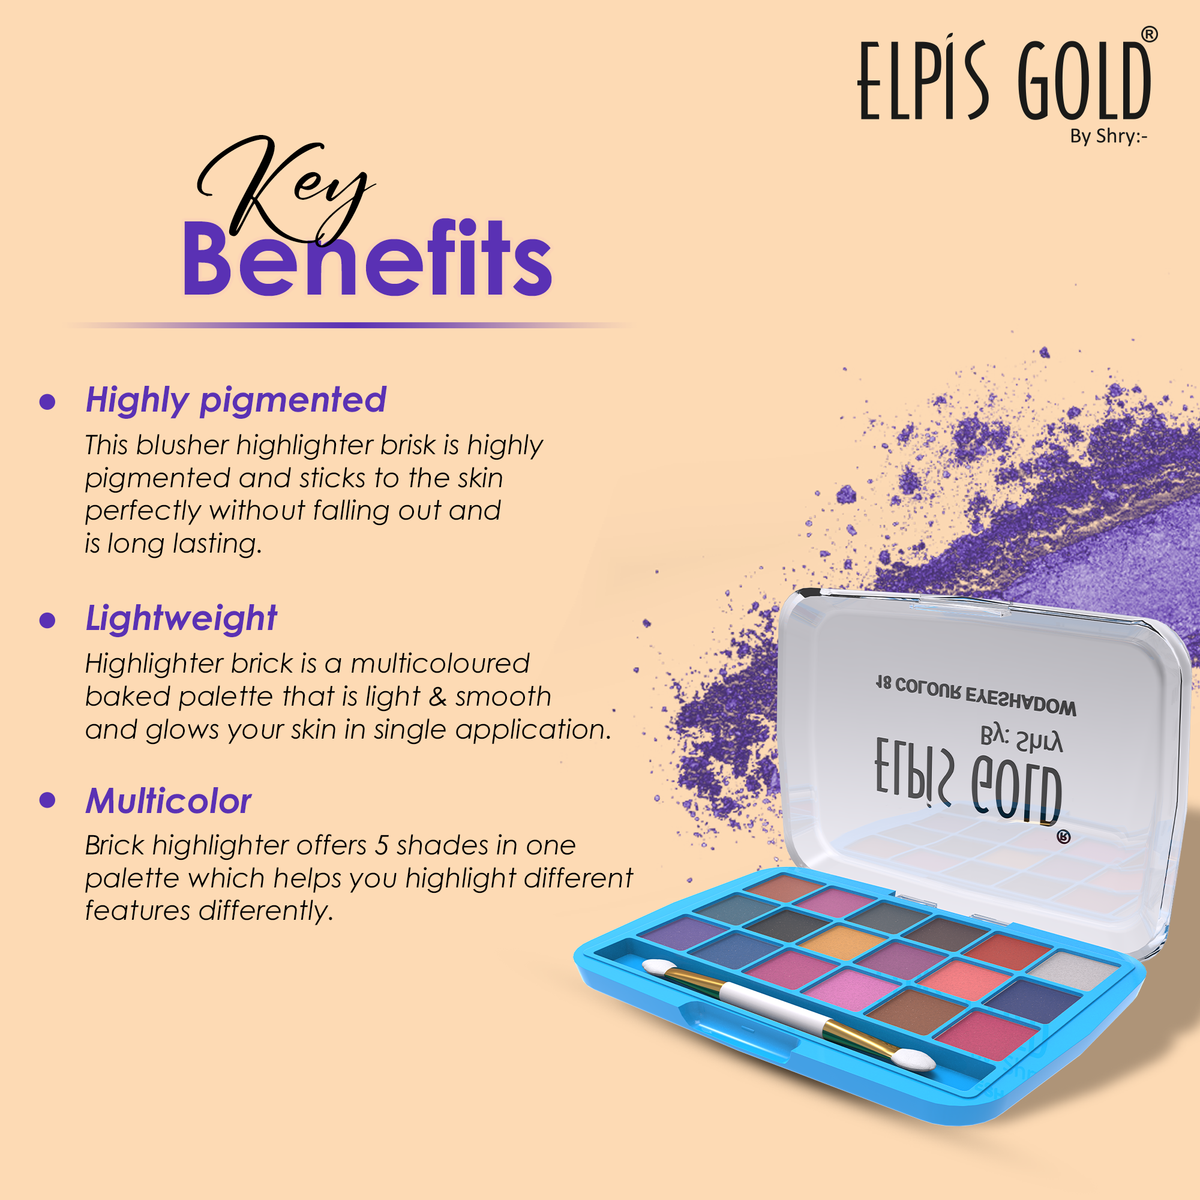 Elpis Gold Waterproof Eyeshadow